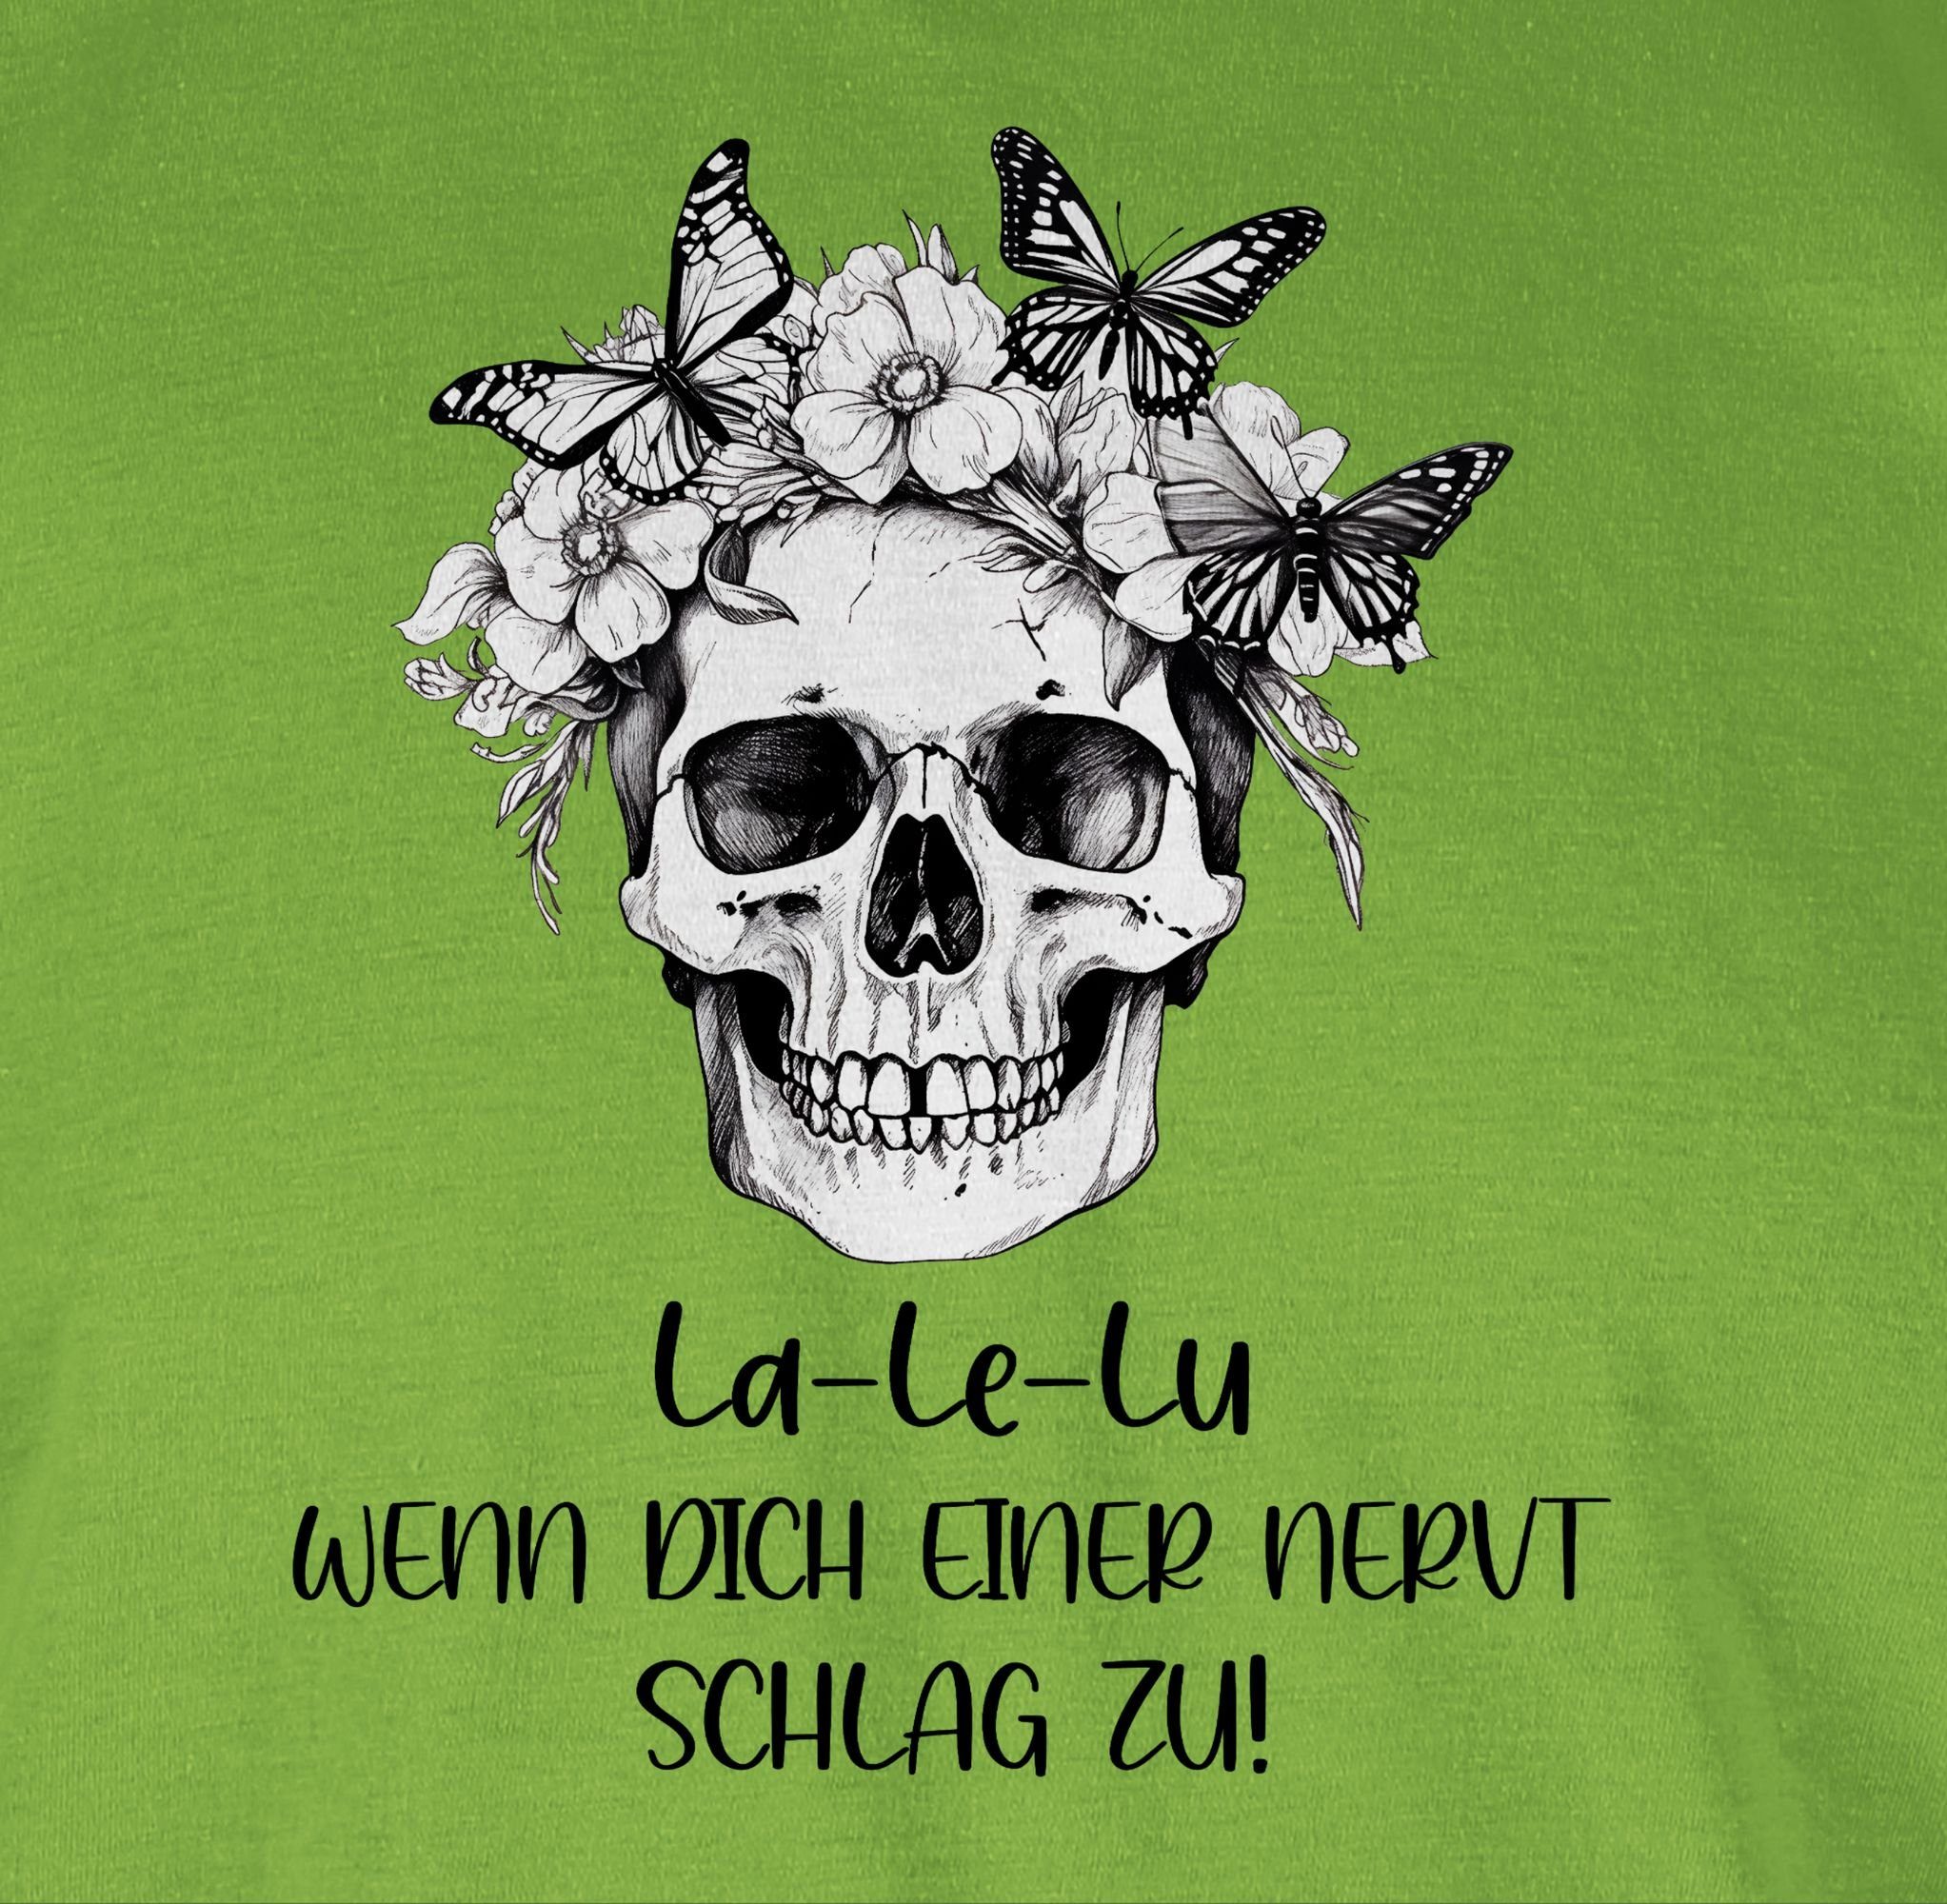 Shirtracer T-Shirt La Le Lu einer Koll Statement Skull wenn zu nervt Hellgrün 02 schlag dich Kollegen Totenkopf